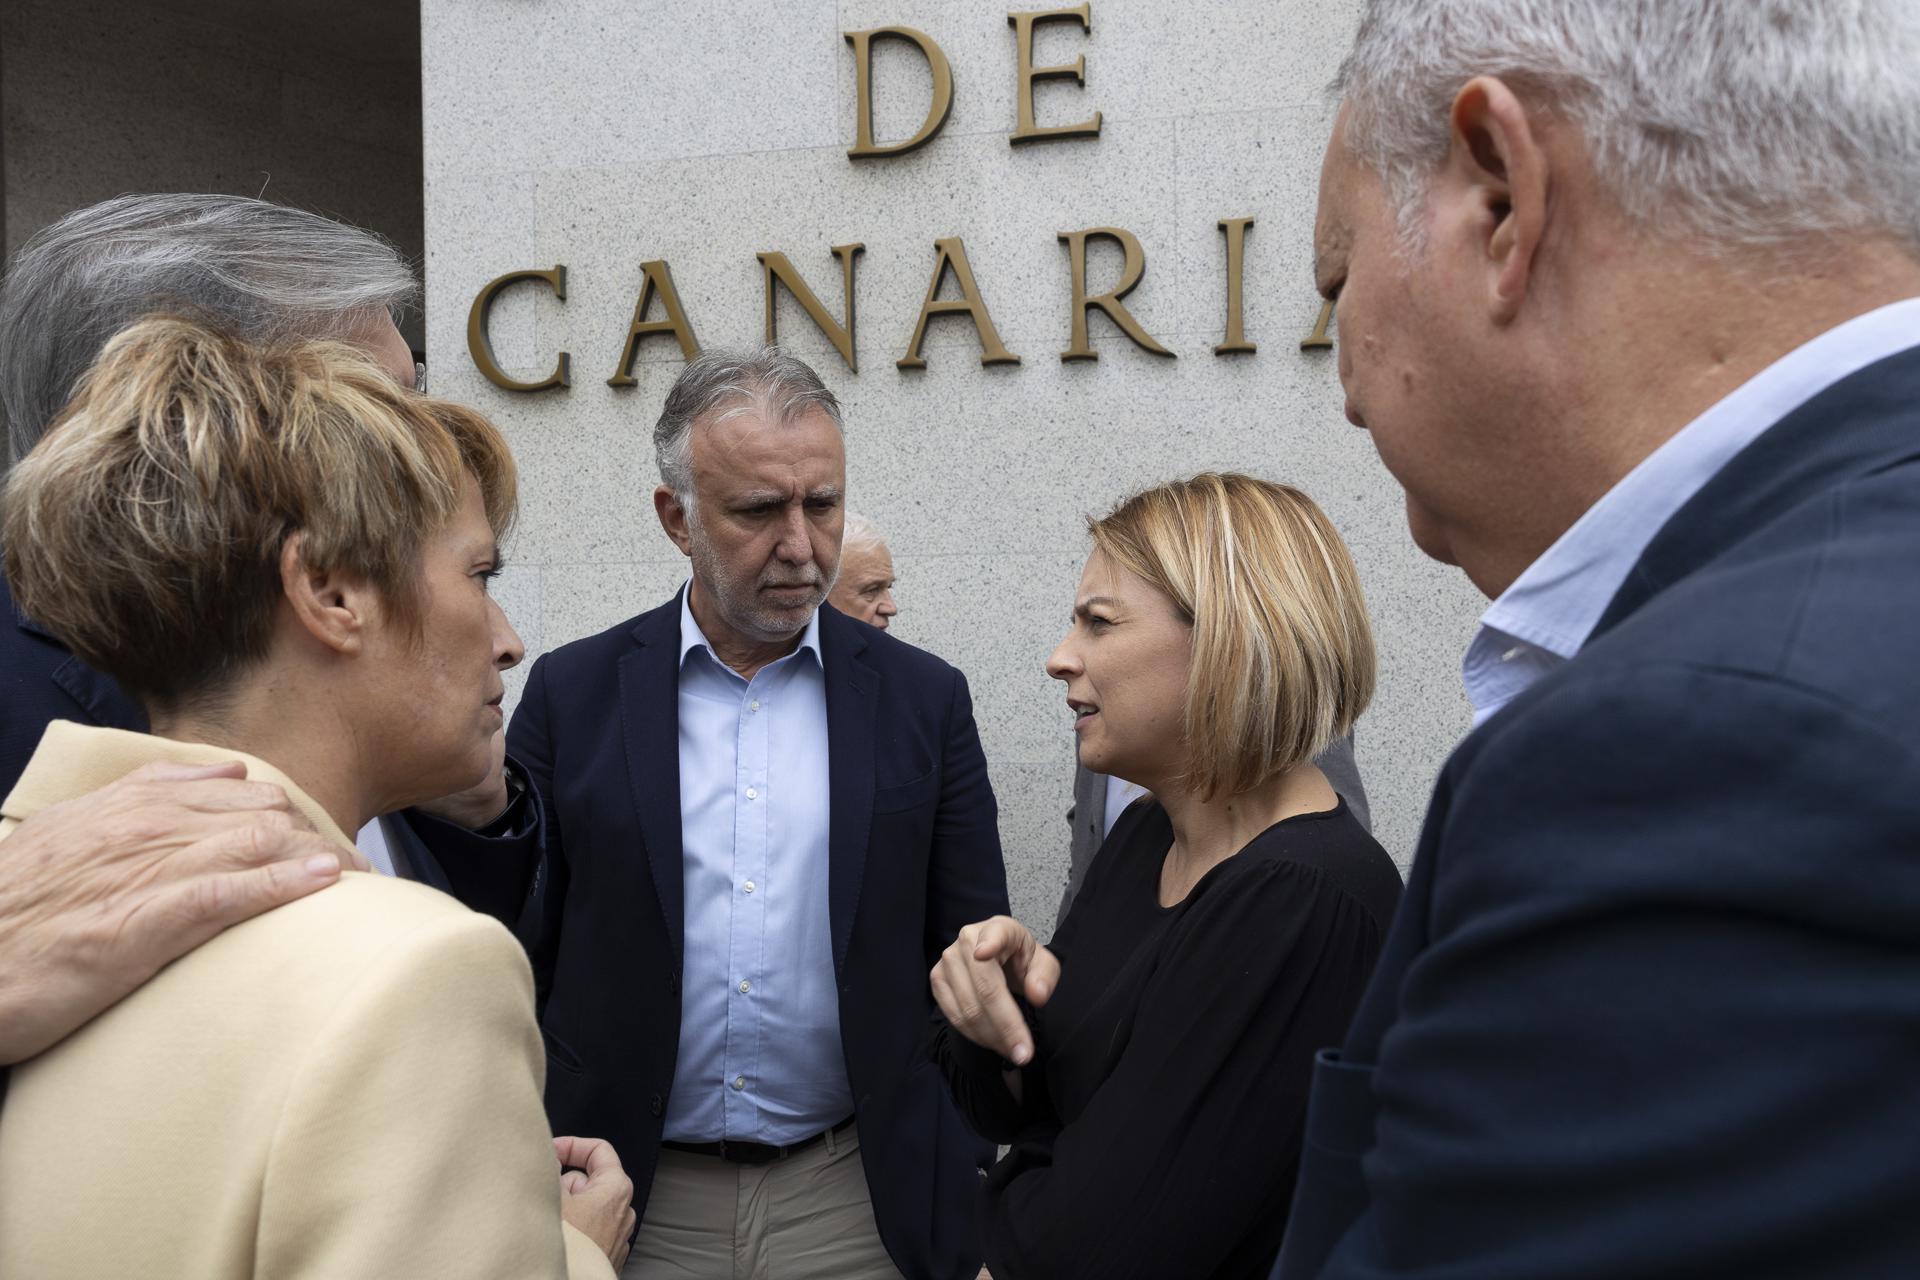 El presidente de Canarias, Ángel Víctor Torres, junto a varios representantes del Gobierno canario, participan en la concentración de repulsa por el asesinato machista de una mujer en Adeje (Tenerife). EFE/ Quique Curbelo